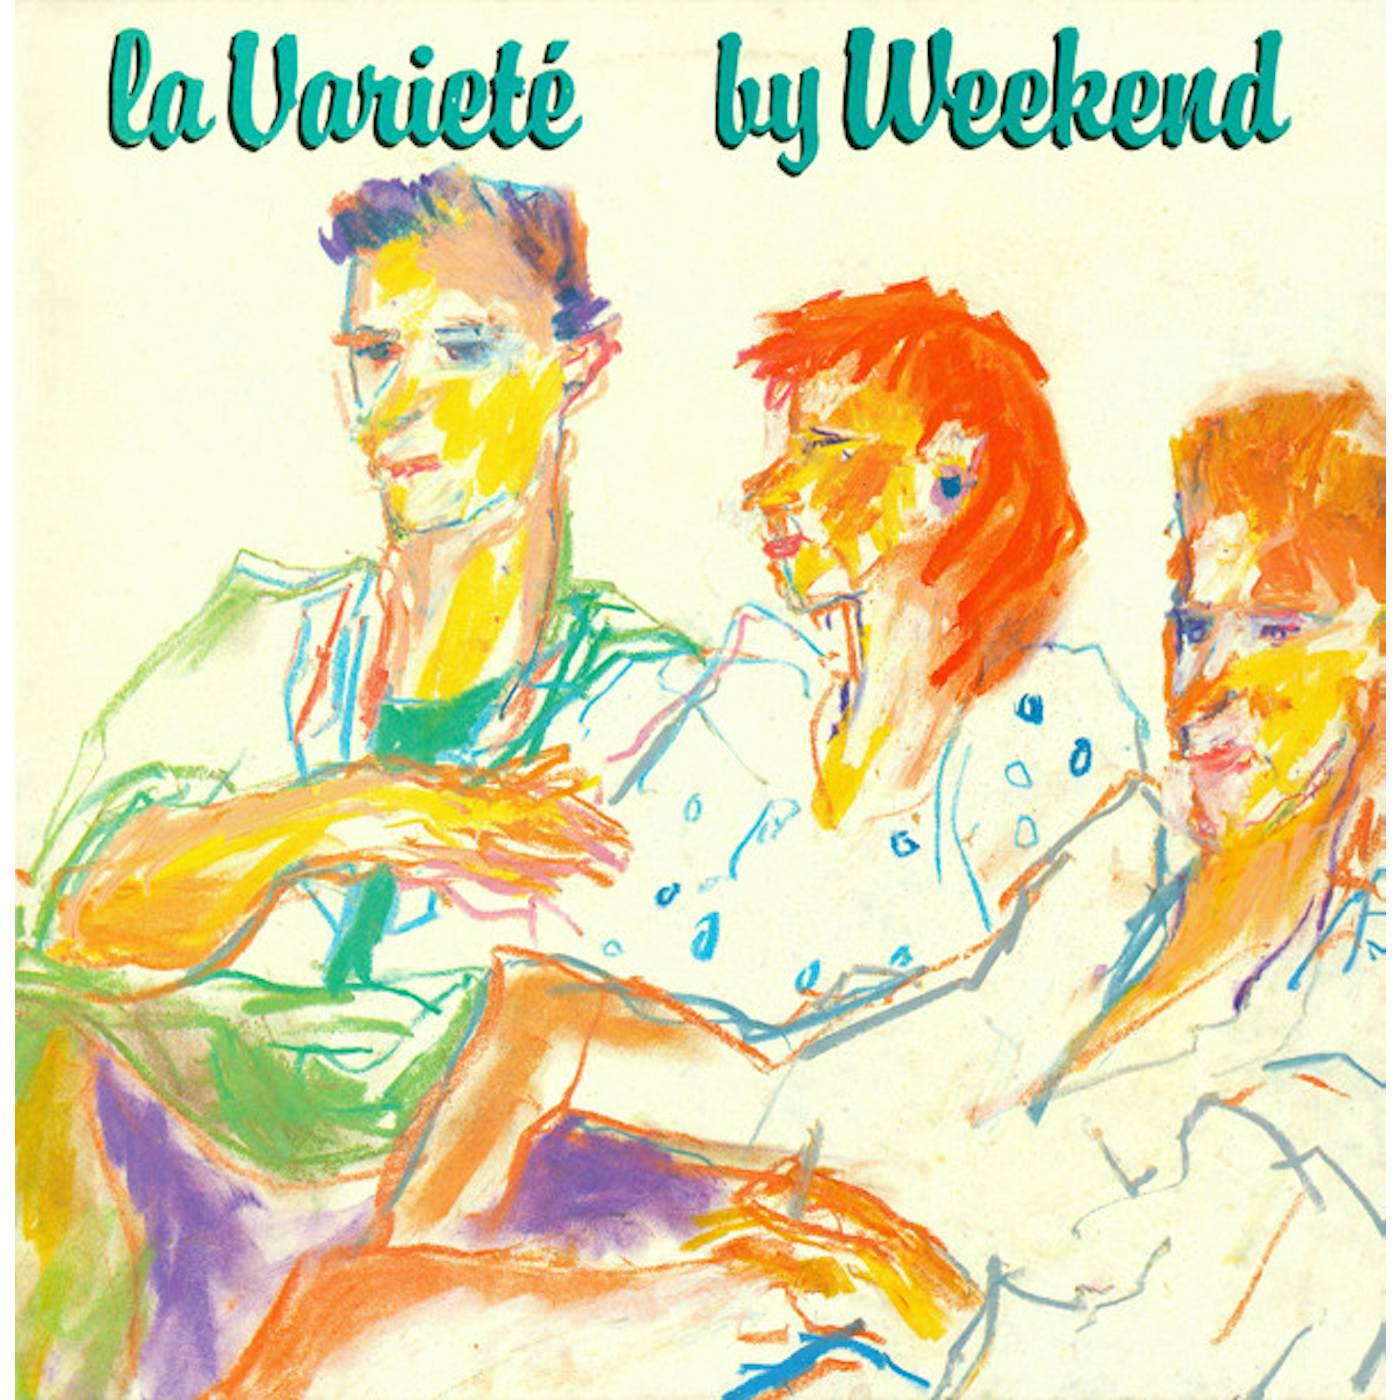 Weekend LA VARIETE Vinyl Record